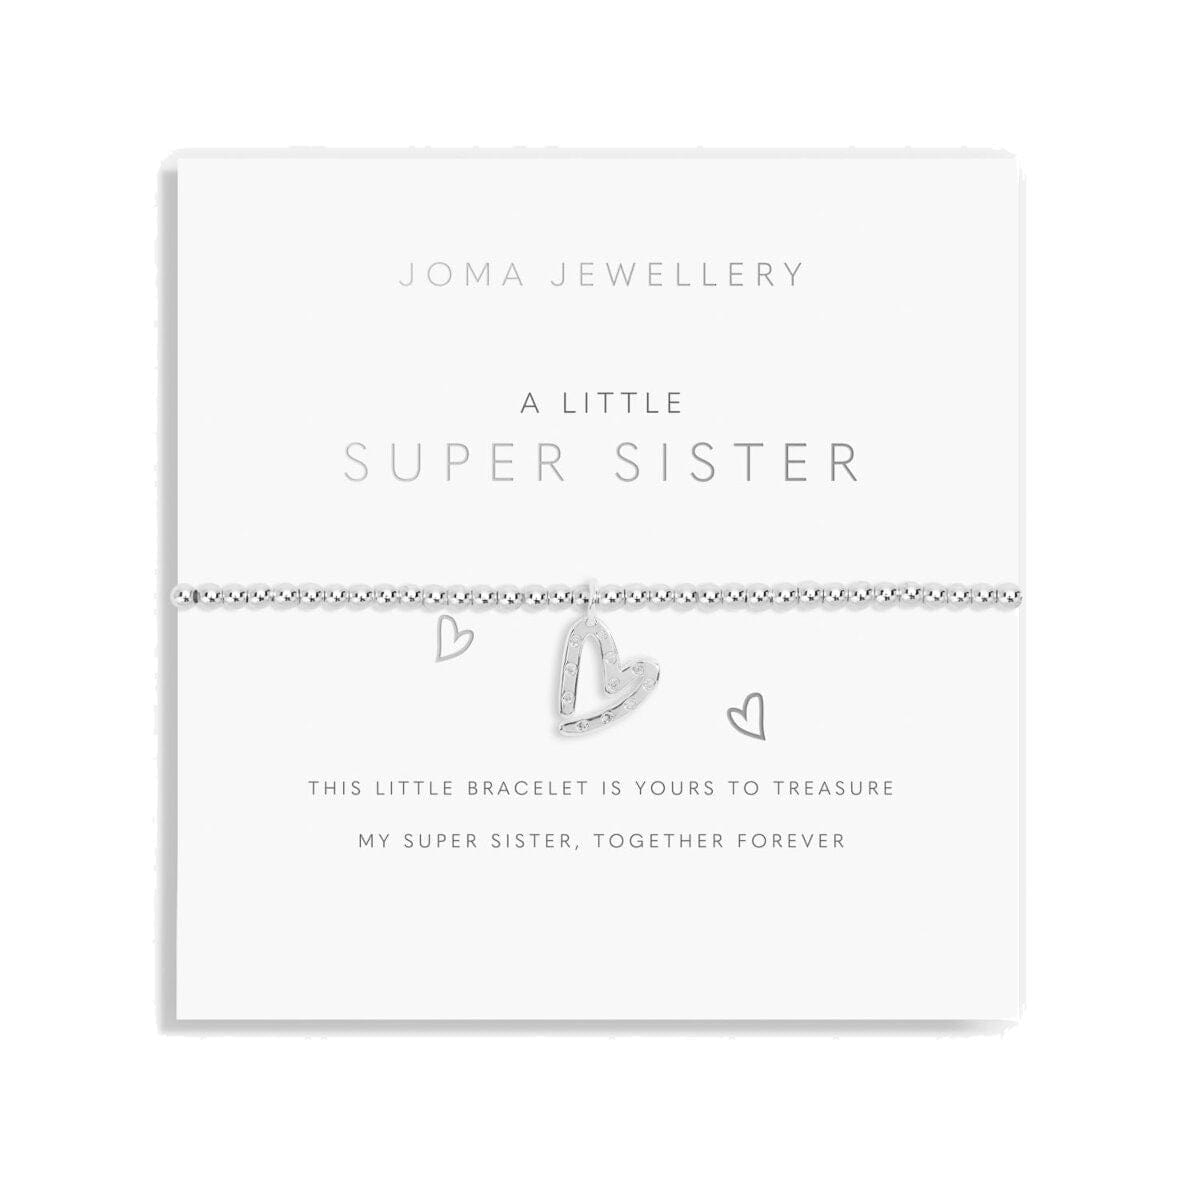 Joma Jewellery Childrens Bracelet Joma Jewellery Childrens Bracelet - A Little Super Sister